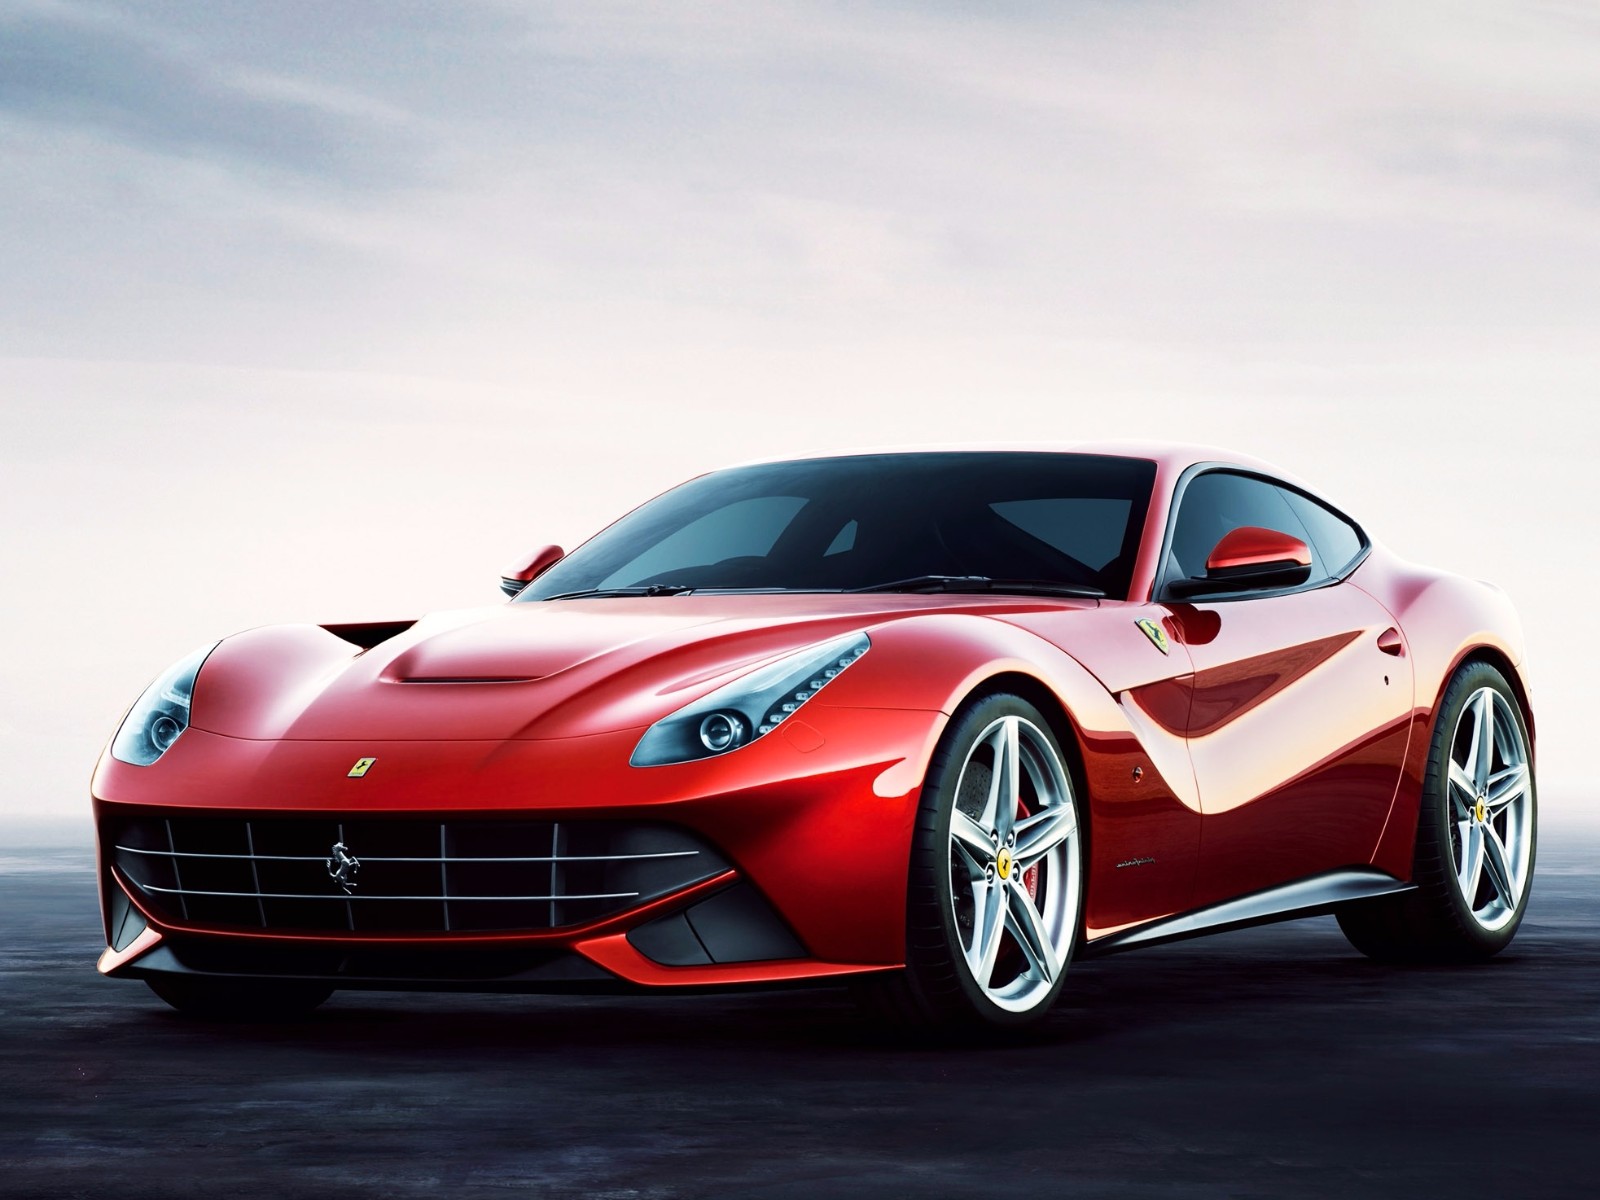 有史以来唯一获得Ferrari许可的 法拉利摩托车 - 哔哩哔哩